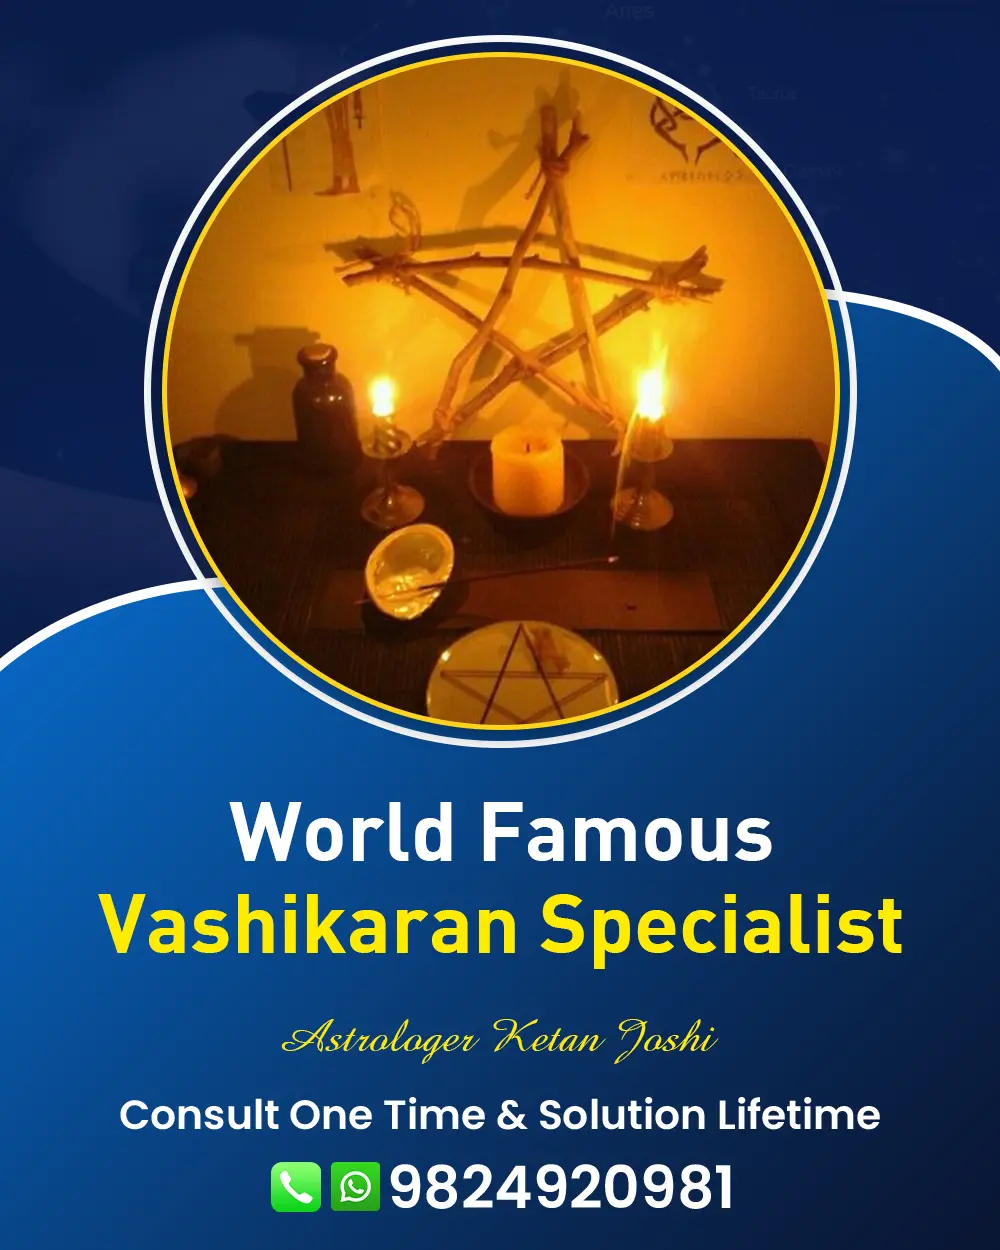 Vashikaran Specialist Astrologer In Rajkot